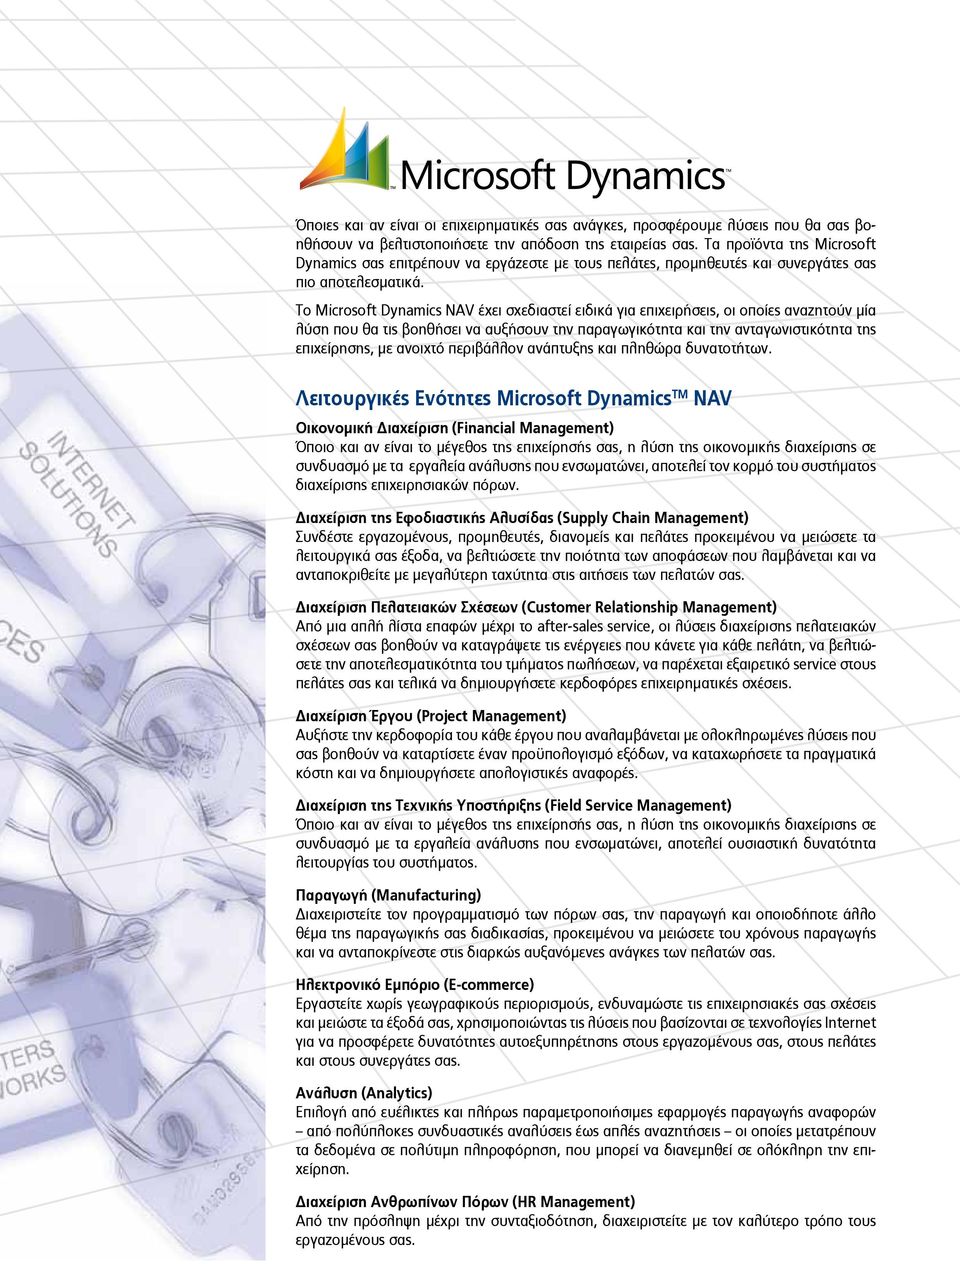 Το Microsoft Dynamics NAV έχει σχεδιαστεί ειδικά για επιχειρήσεις, οι οποίες αναζητούν μία λύση που θα τις βοηθήσει να αυξήσουν την παραγωγικότητα και την ανταγωνιστικότητα της επιχείρησης, με